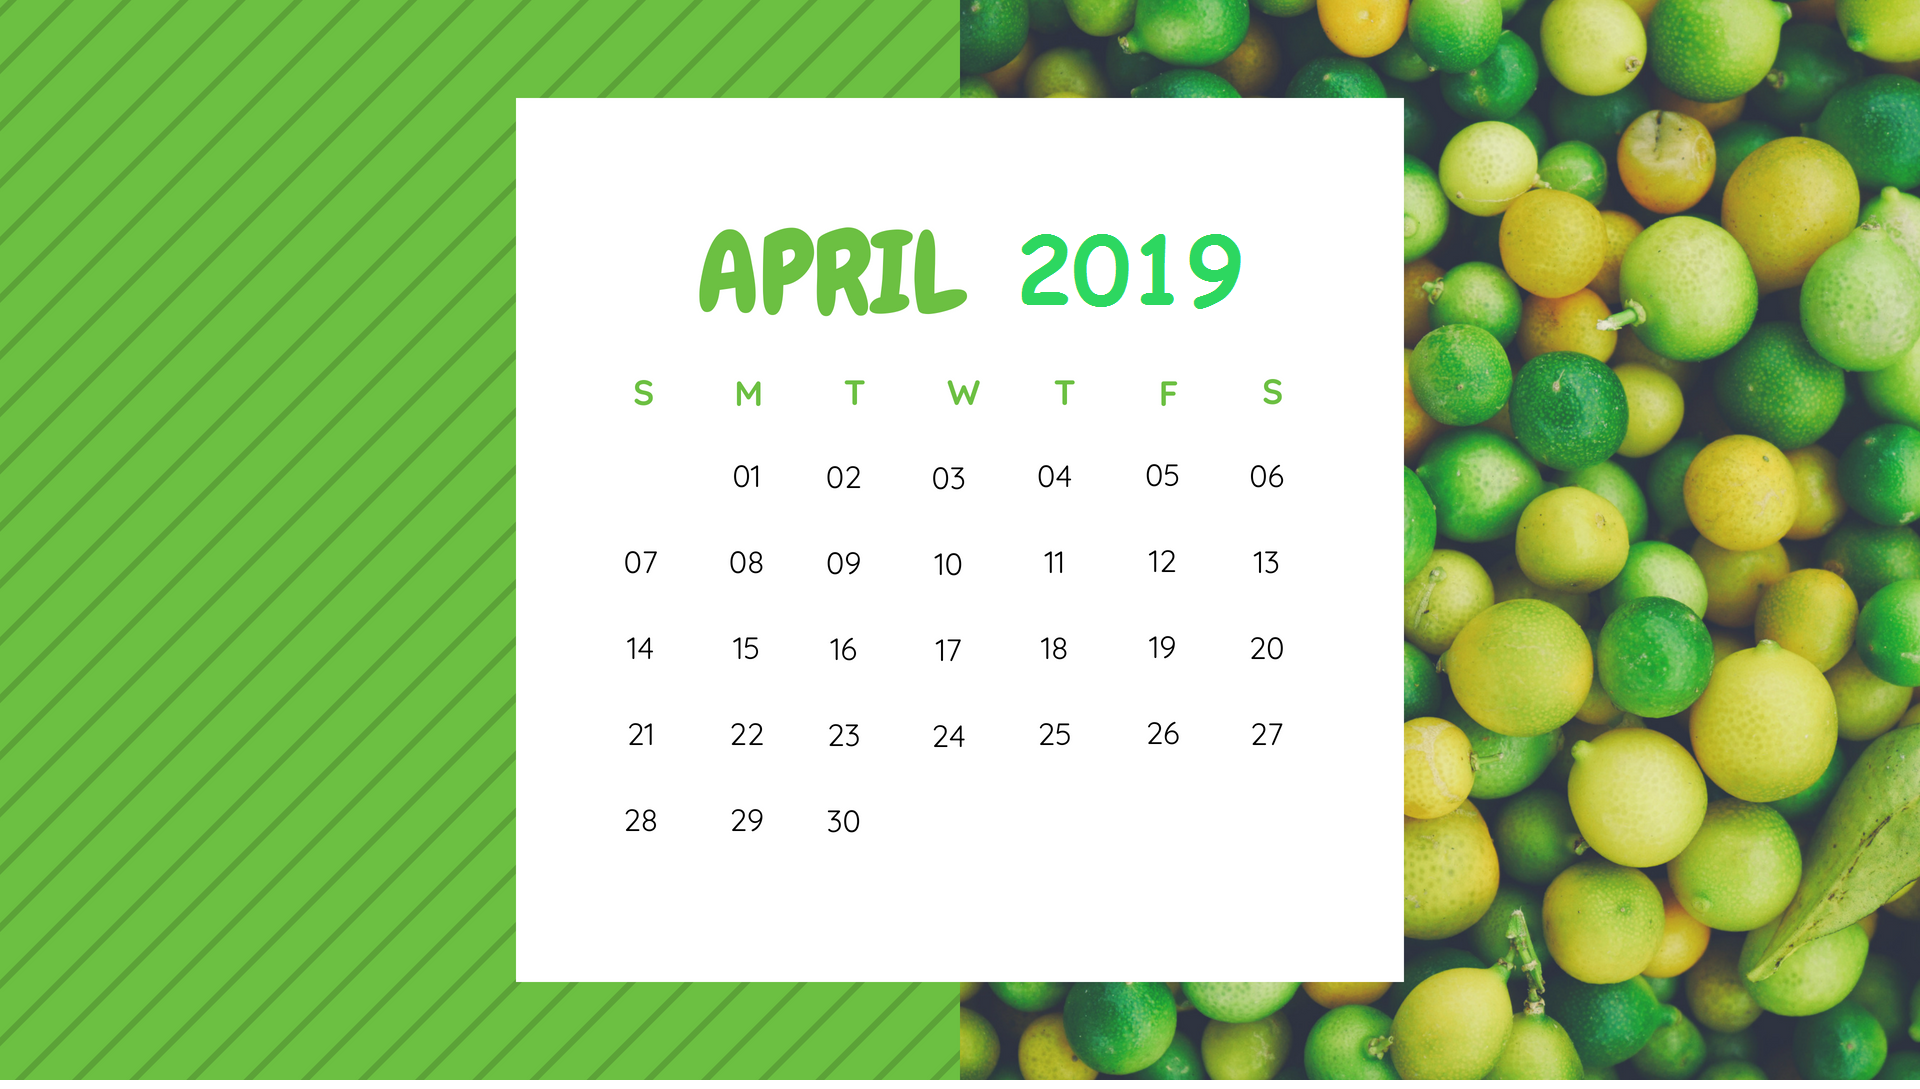 April 2019 Botanical Fruits Calendar